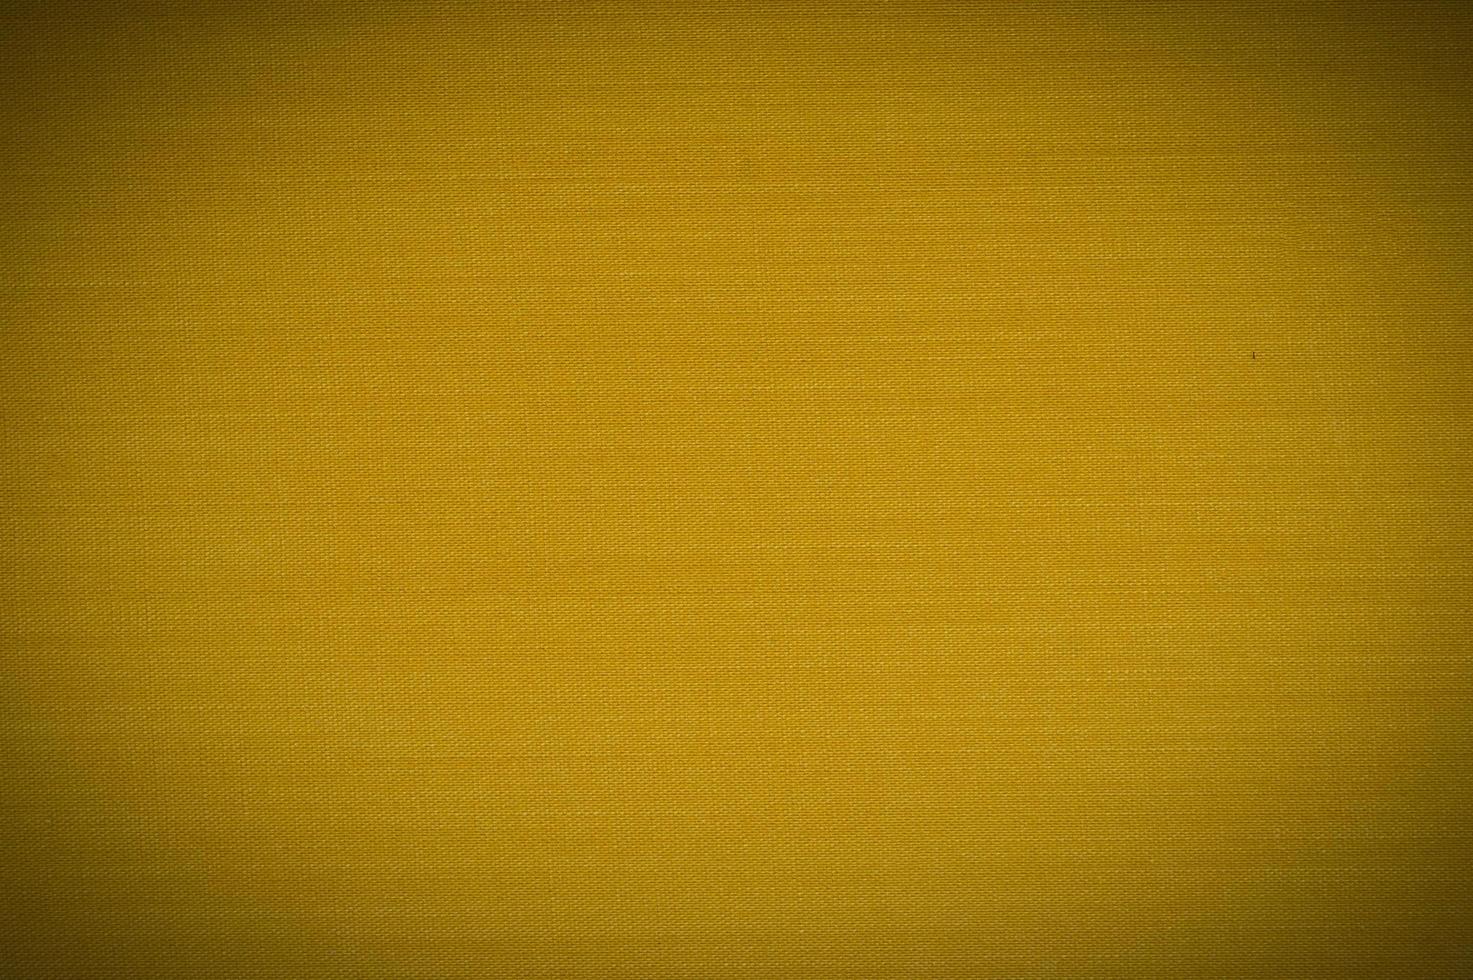 couverture de livre toile fond jaune texturé photo